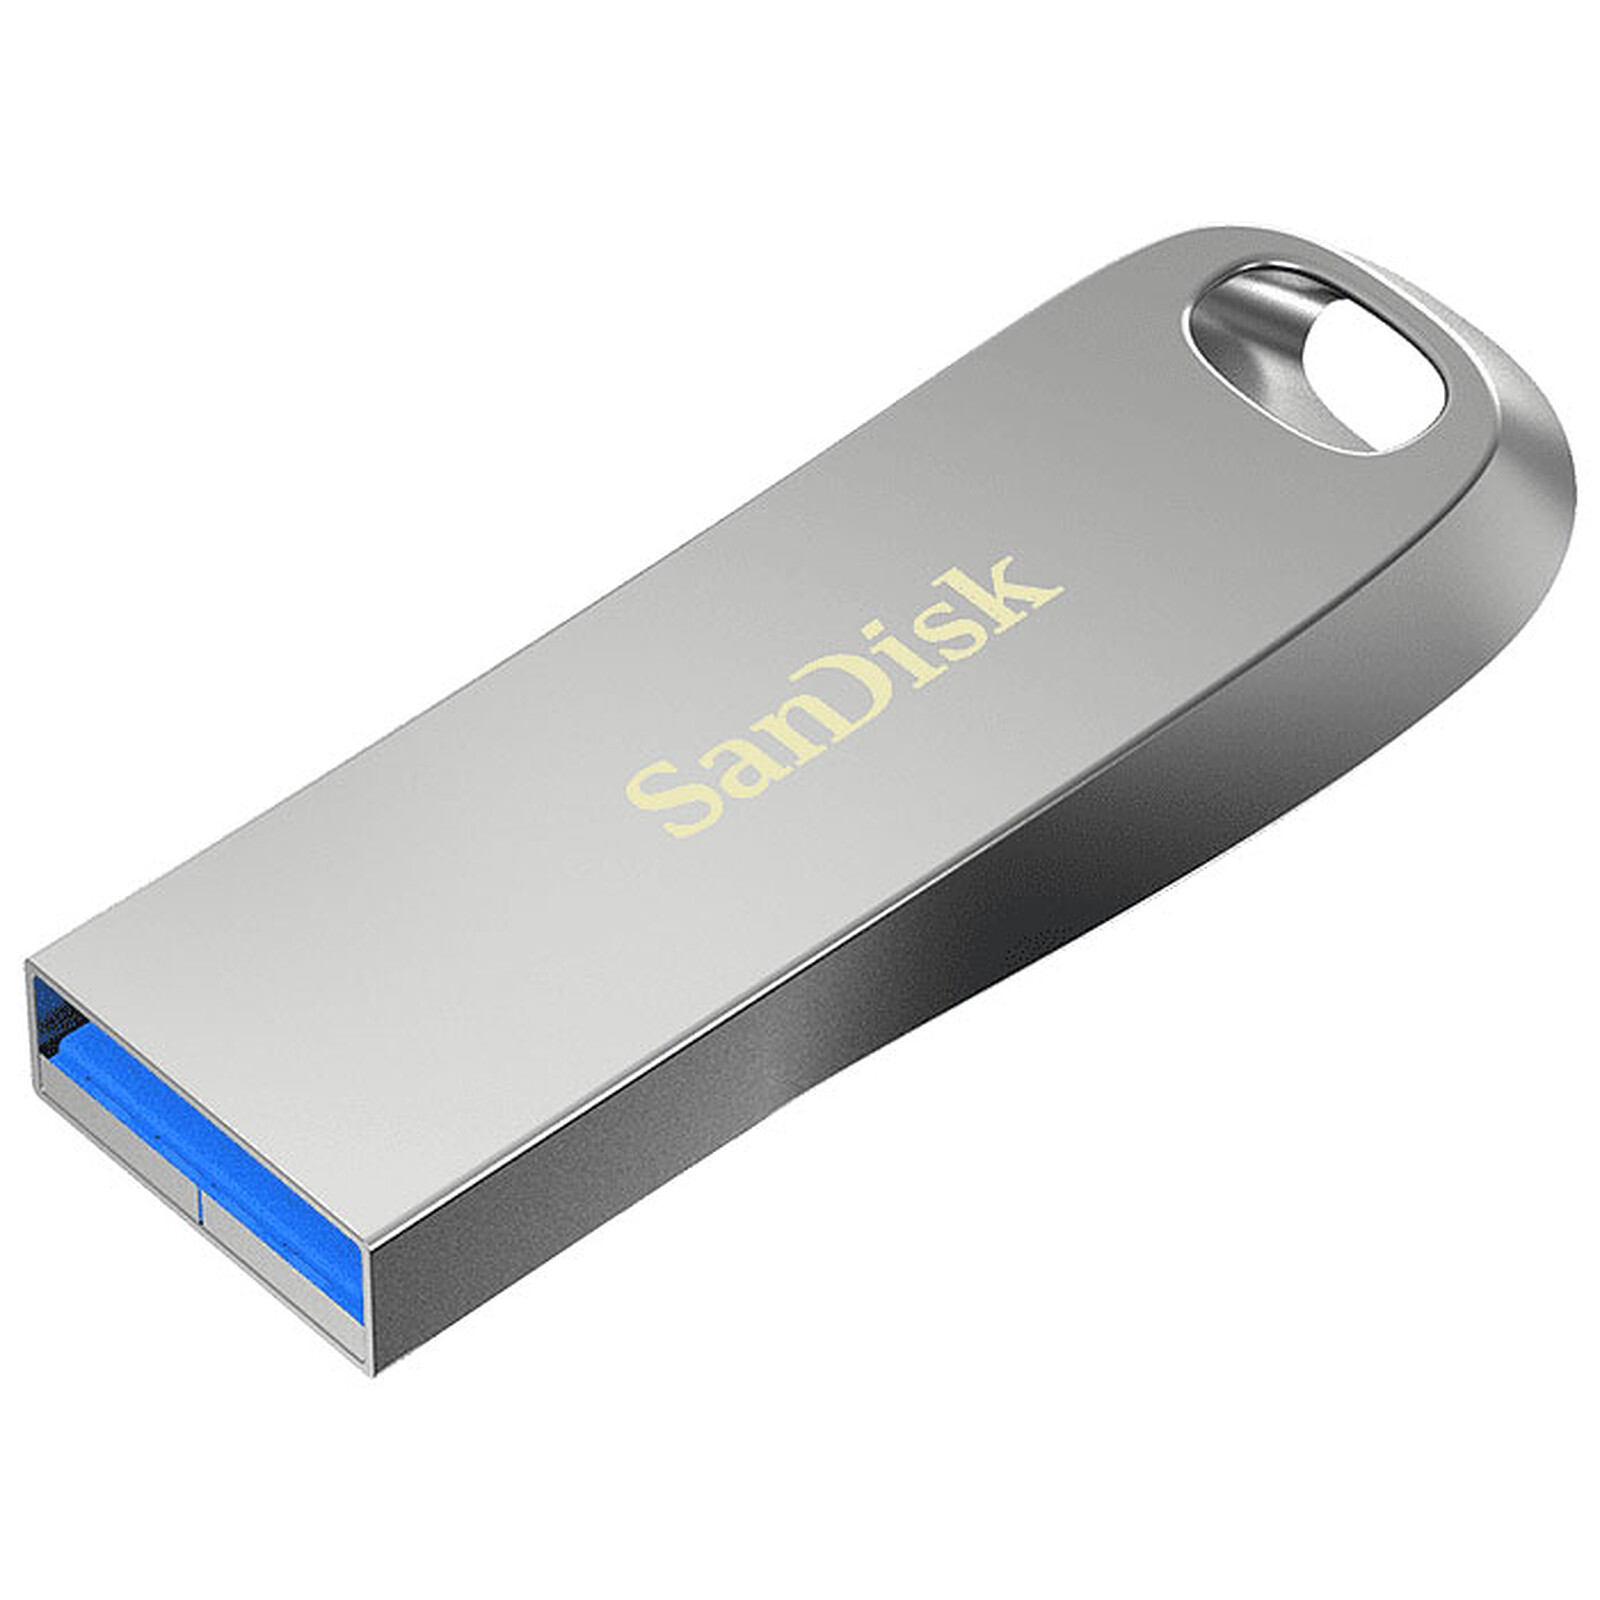 Achetez votre SanDisk Ultra Clé USB 3.0 64 Go Rouge au meilleur